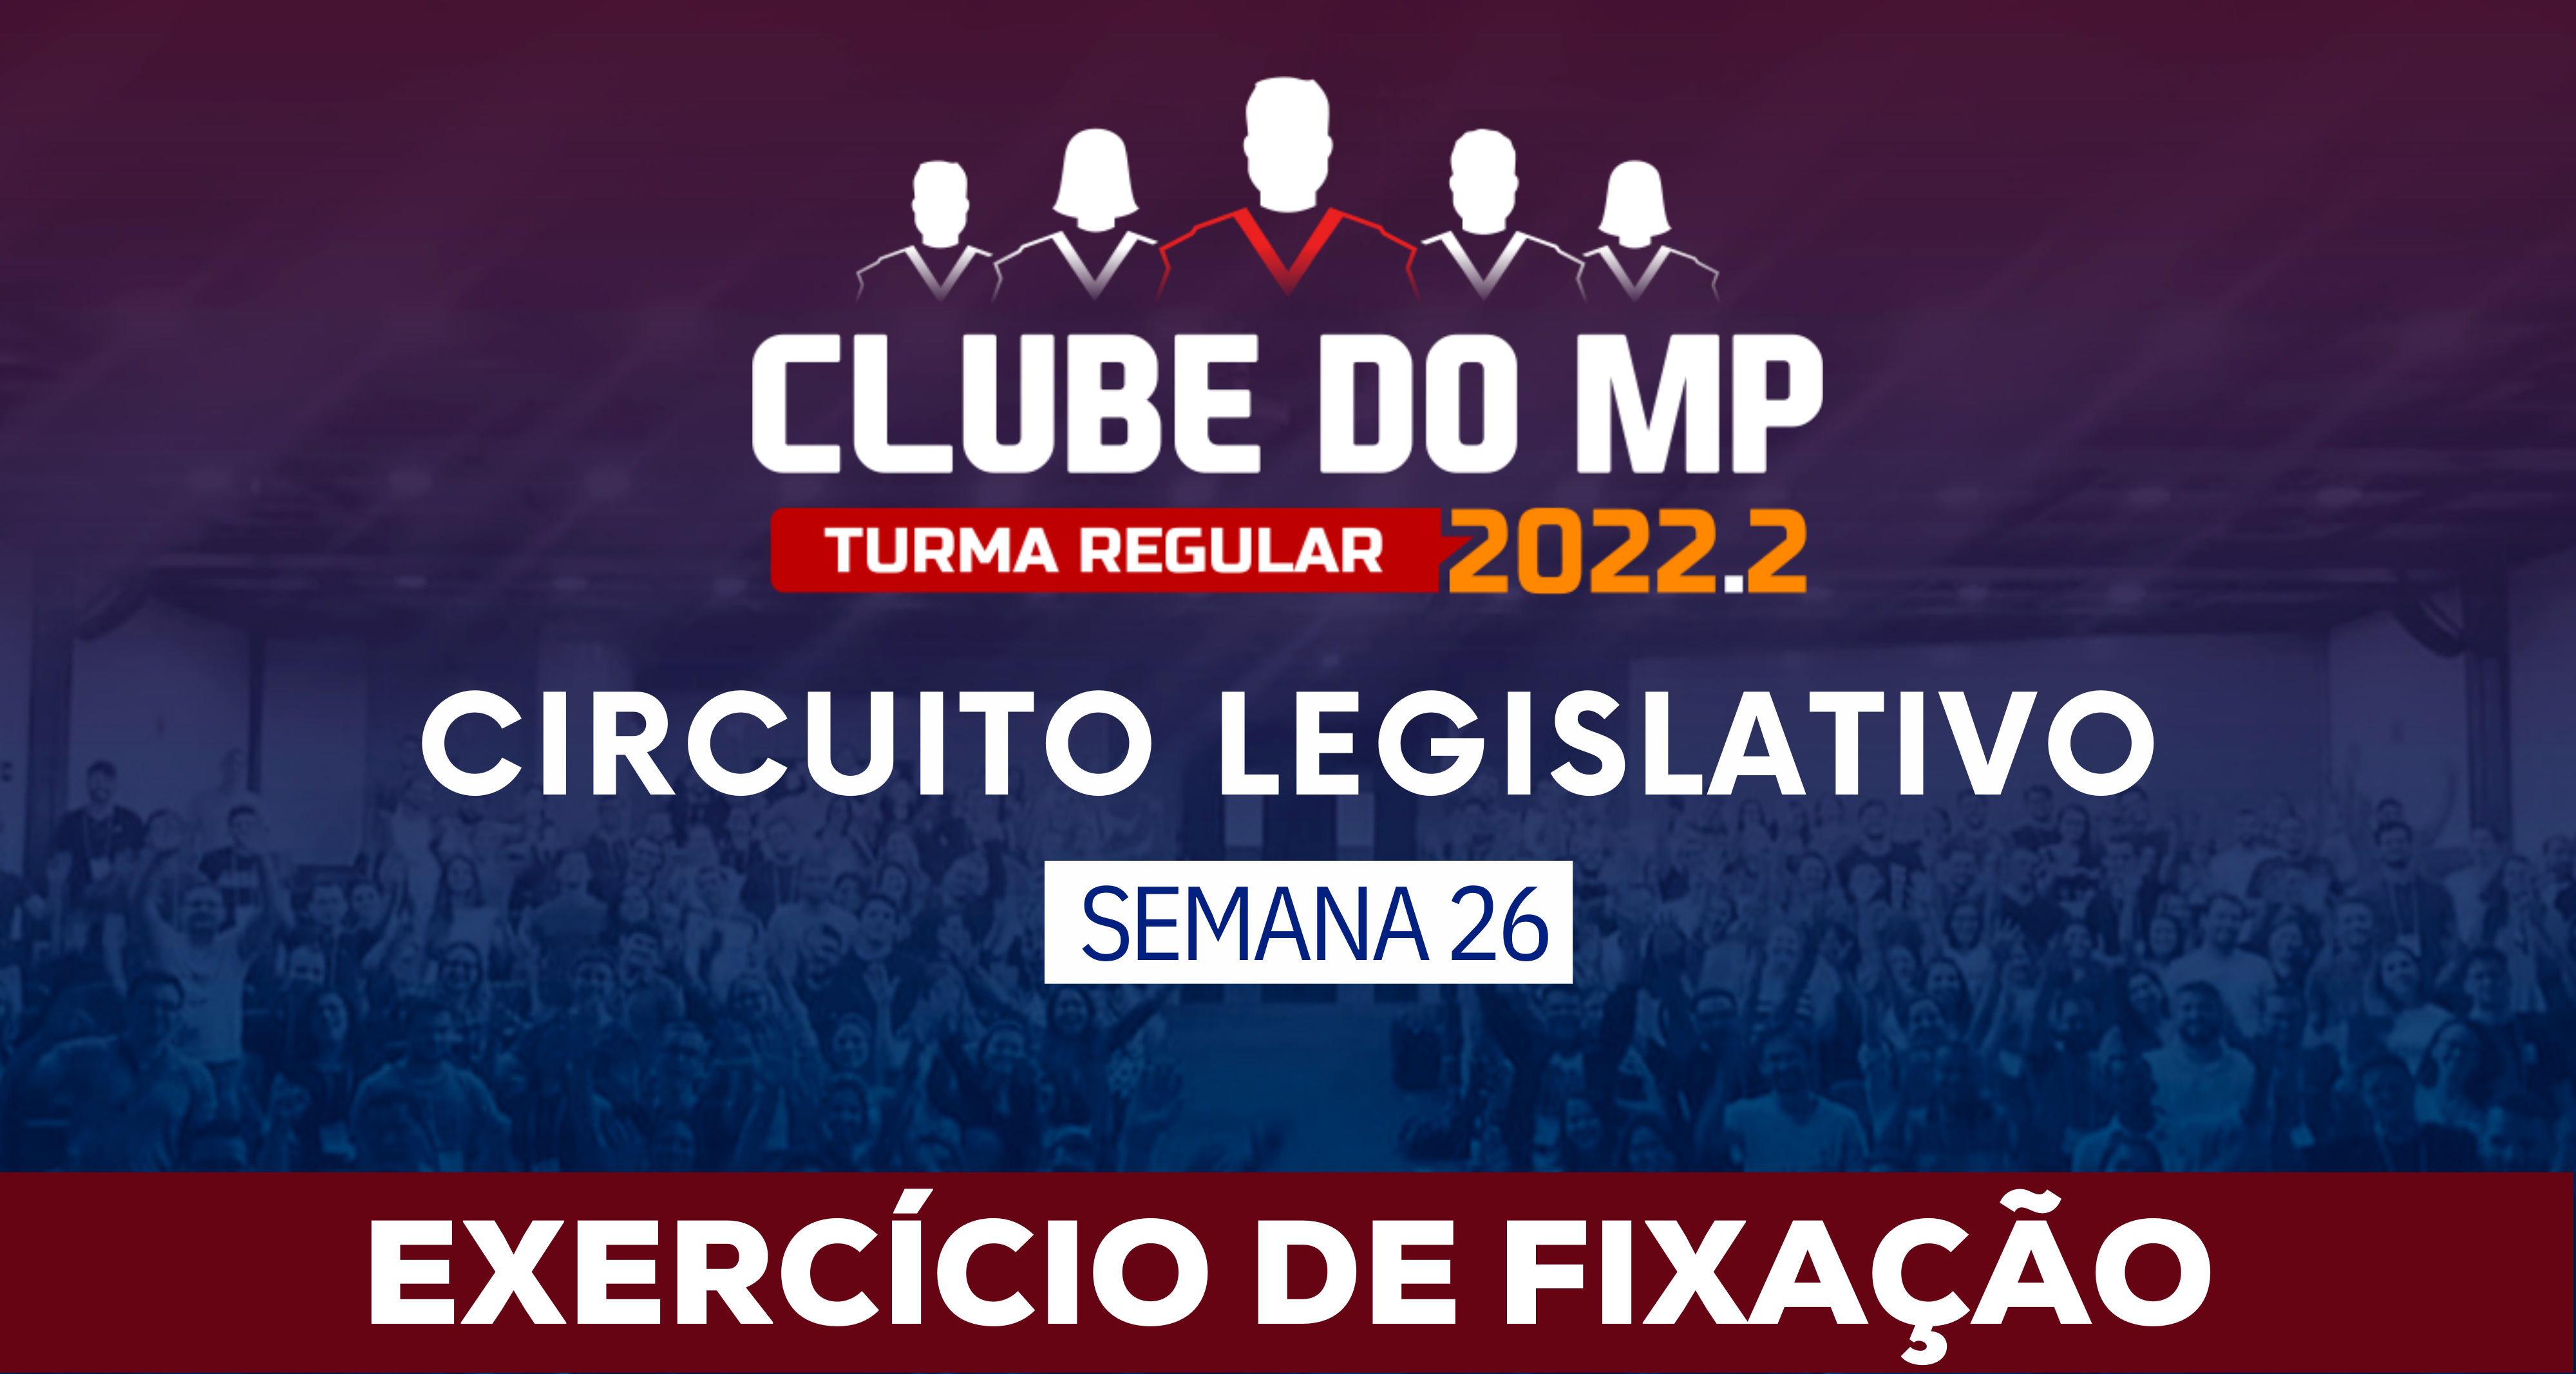 Circuito Legislativo 2022.2 (Clube do MP - Semana 26)